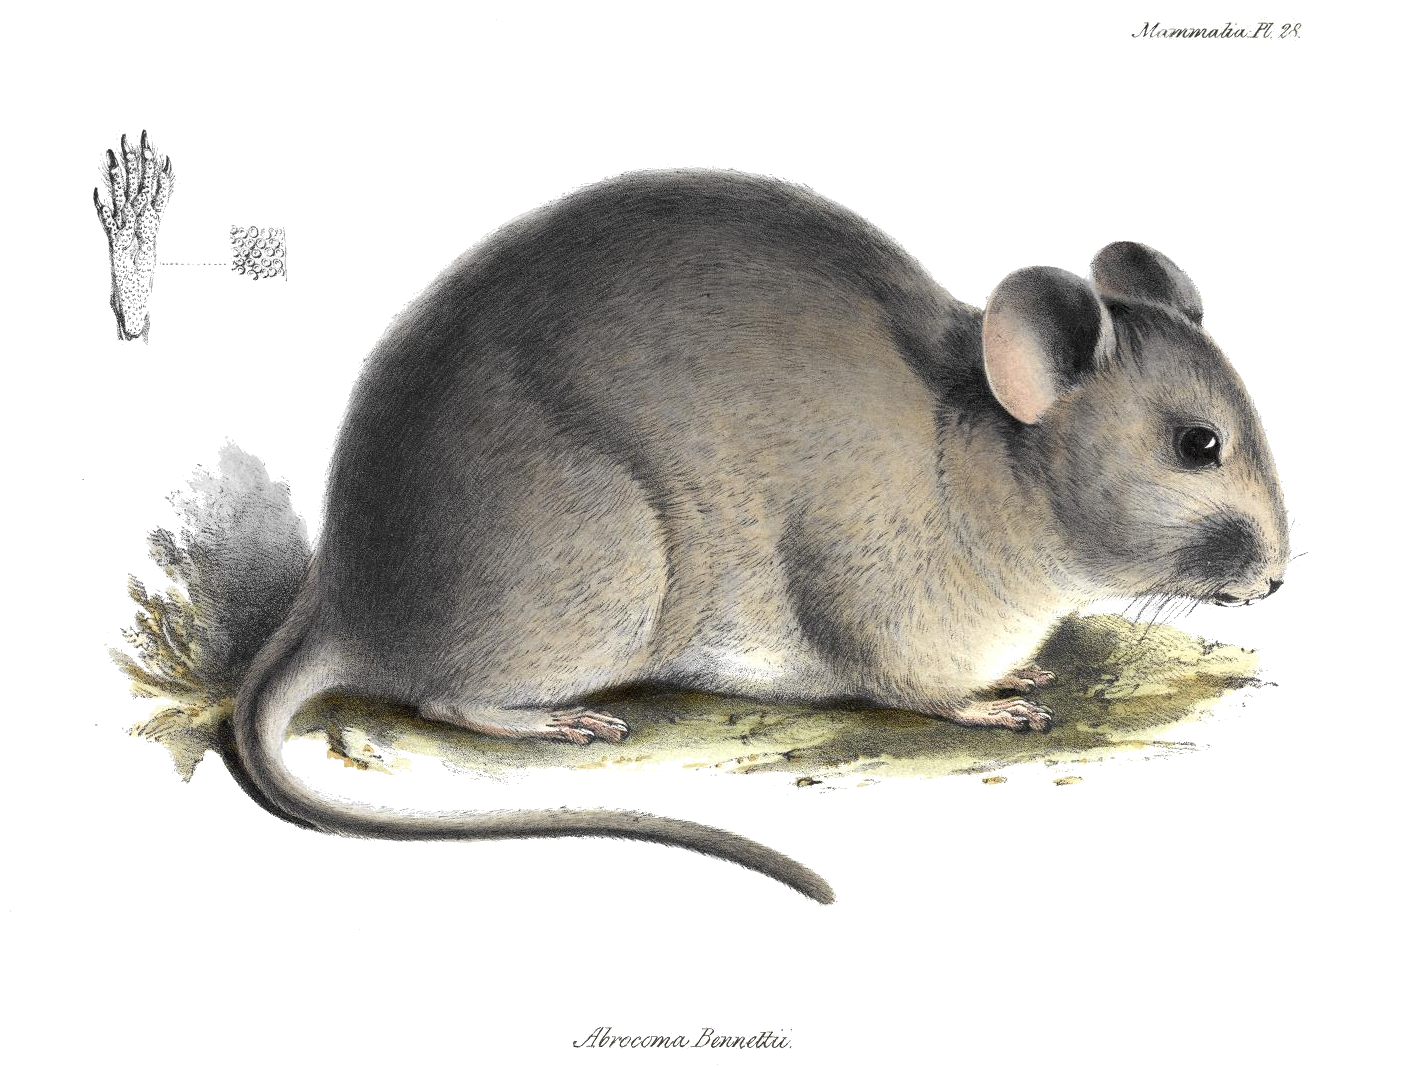 Chinchilla rat - Wikipedia